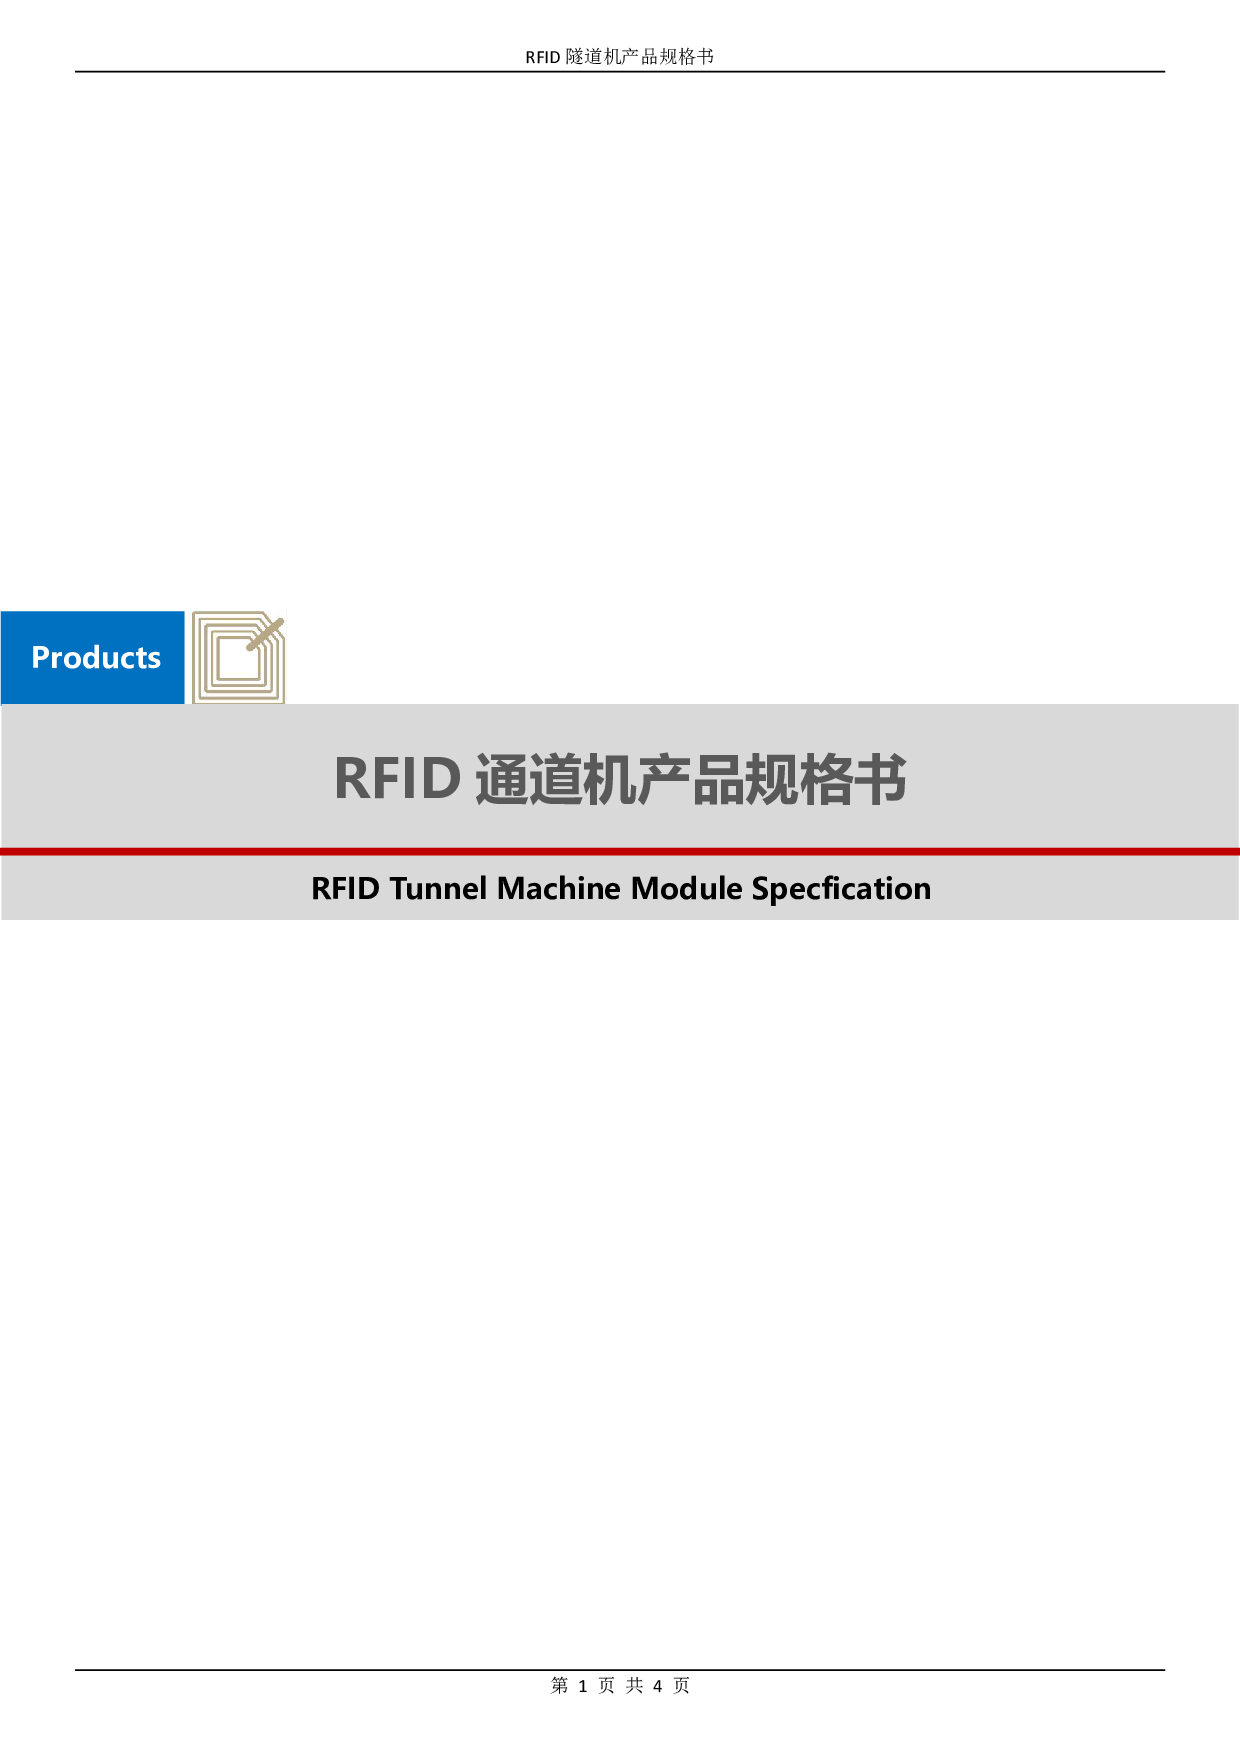 RFID 通道机产品图片